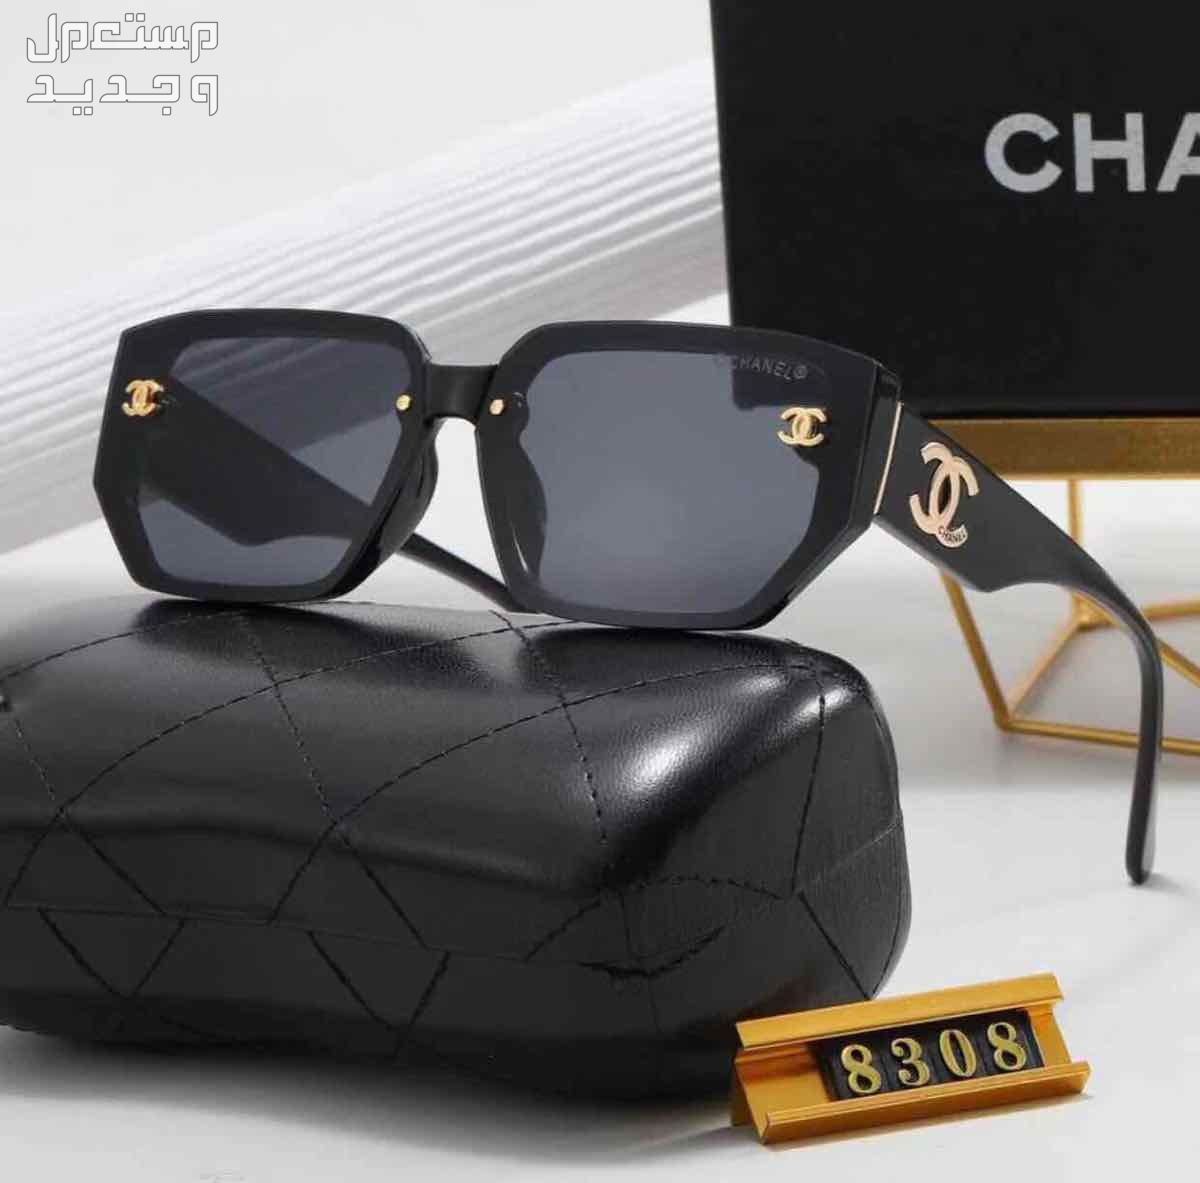 نظارات شمسية ماركات عالمية درجه اولي حماية من الاشعة فوق البنفسجية الضارة 100%؜ UVprotection في الرياض بسعر 150 ريال سعودي